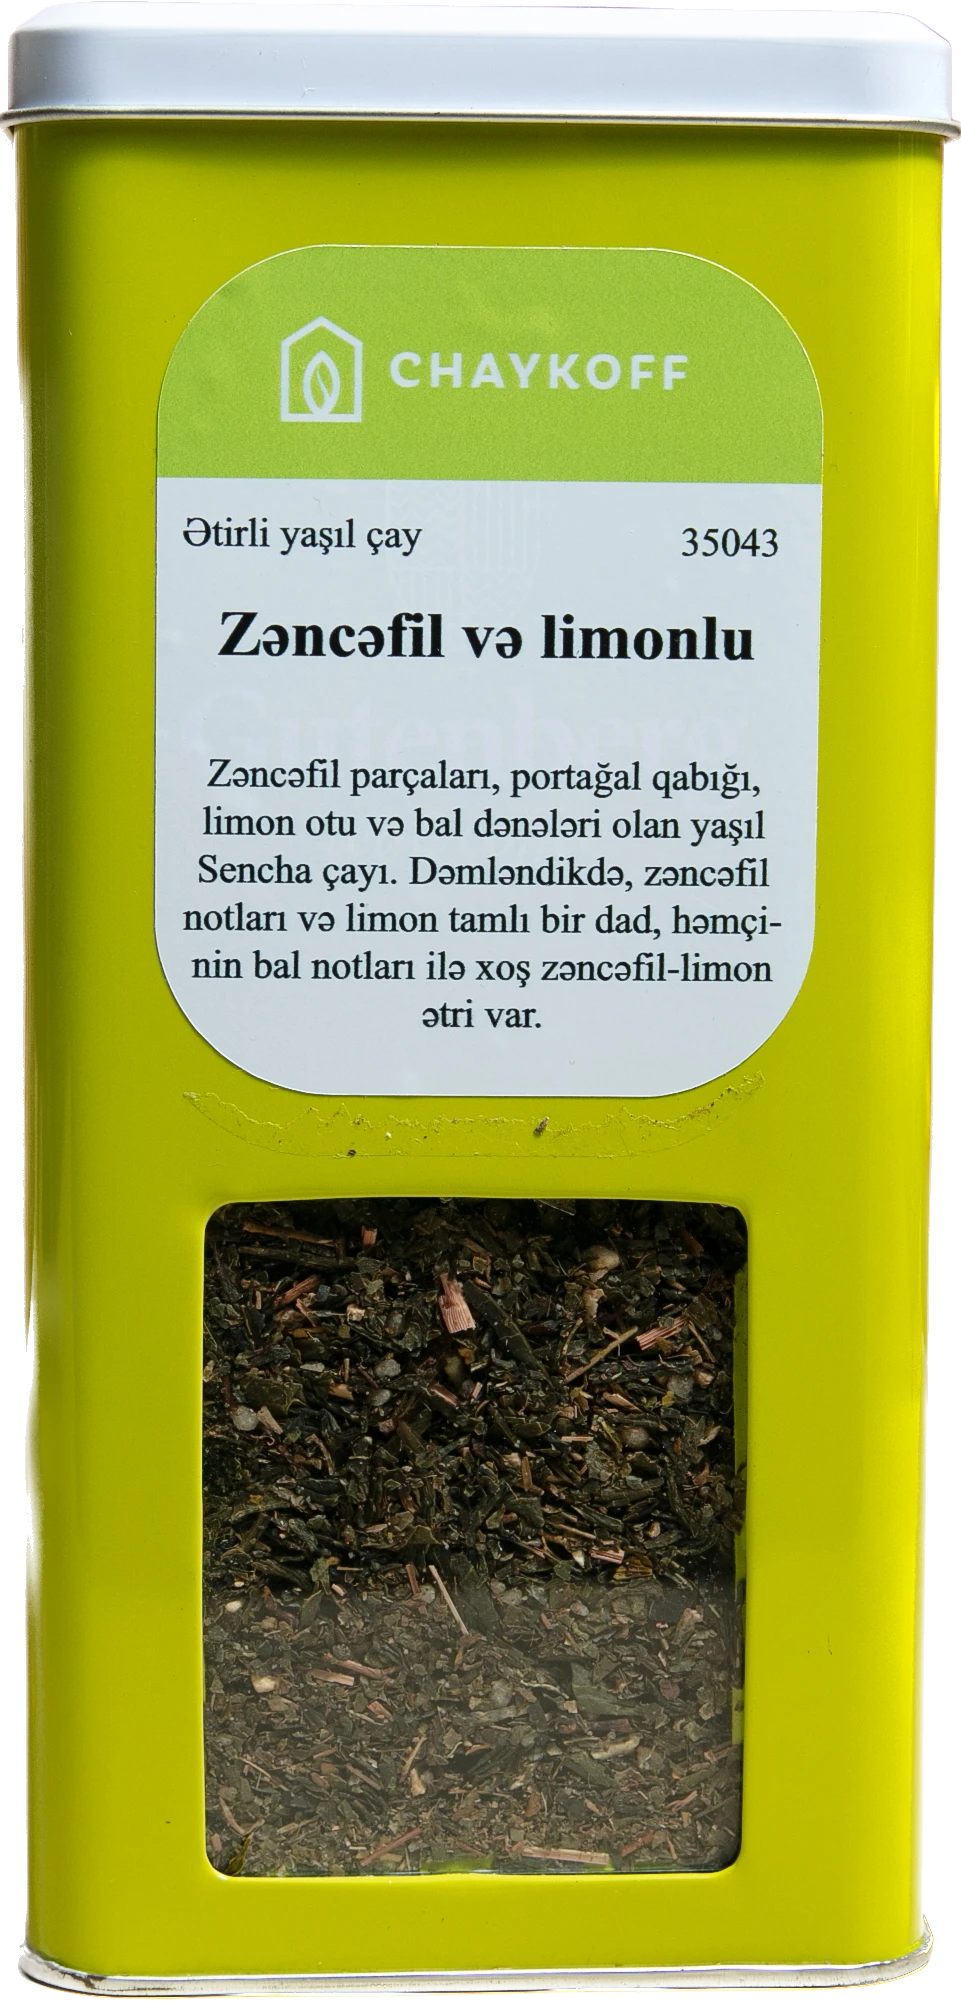 Zəncəfil Və Limonlu Ətirli Yaşil Çay (100 qr)